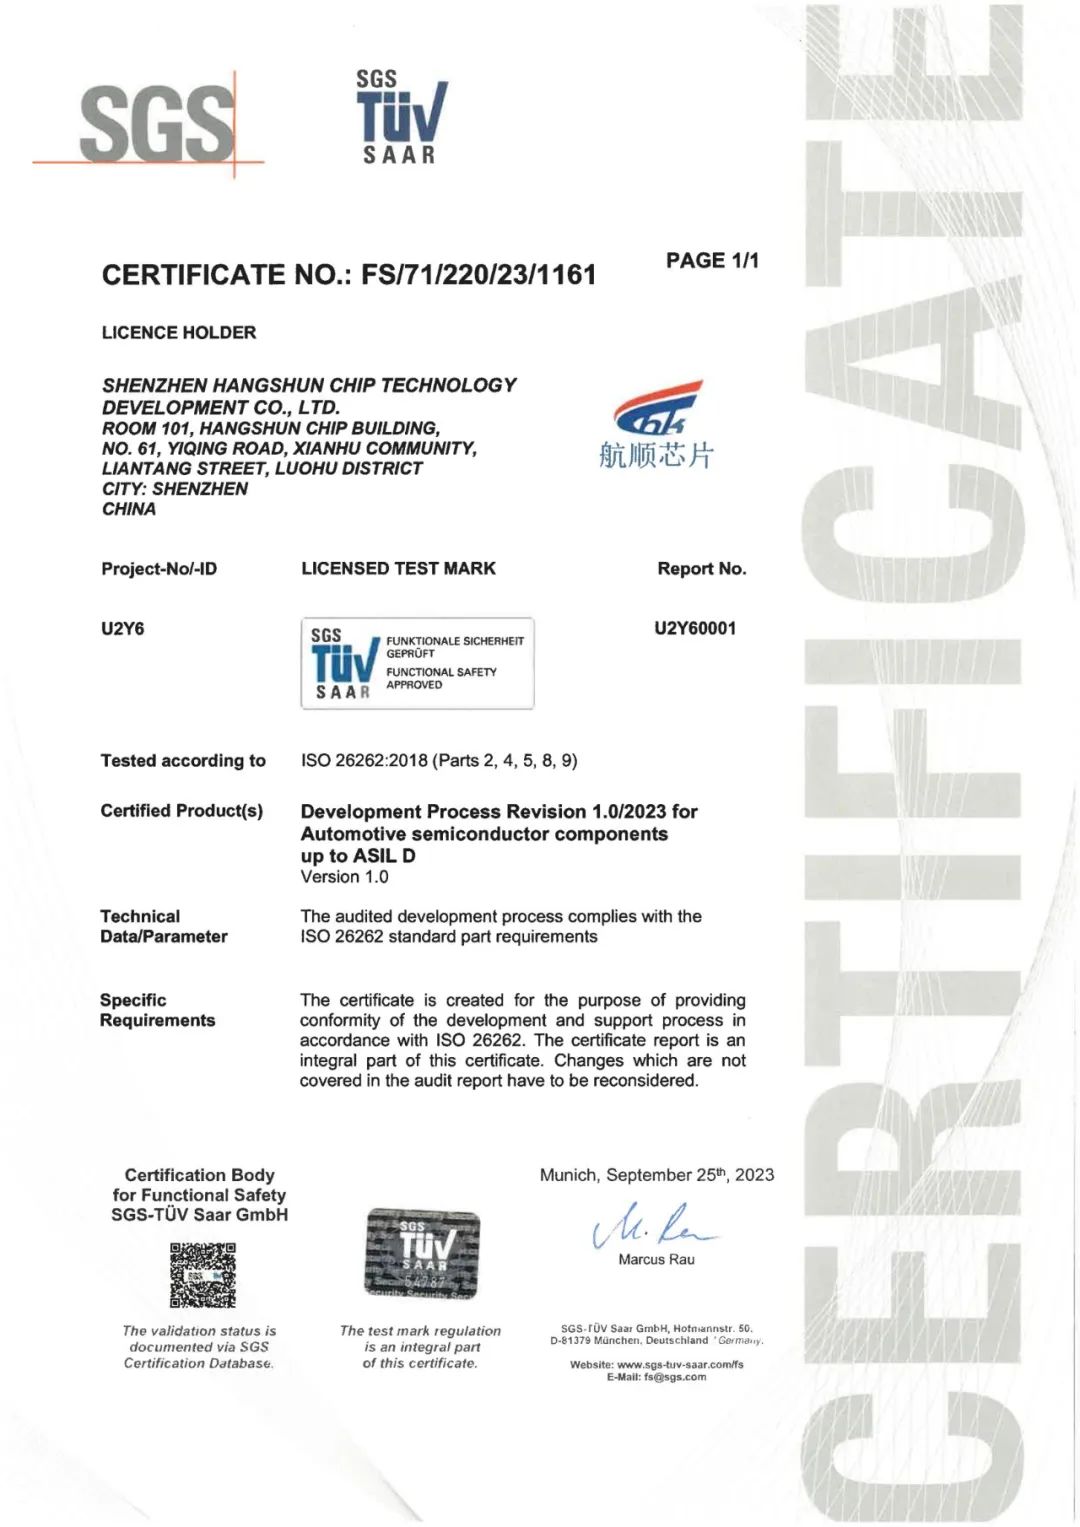 尊龙凯时芯片获得ISO 26262最高等级ASIL D认证，汽车功能安全管理体系再升级